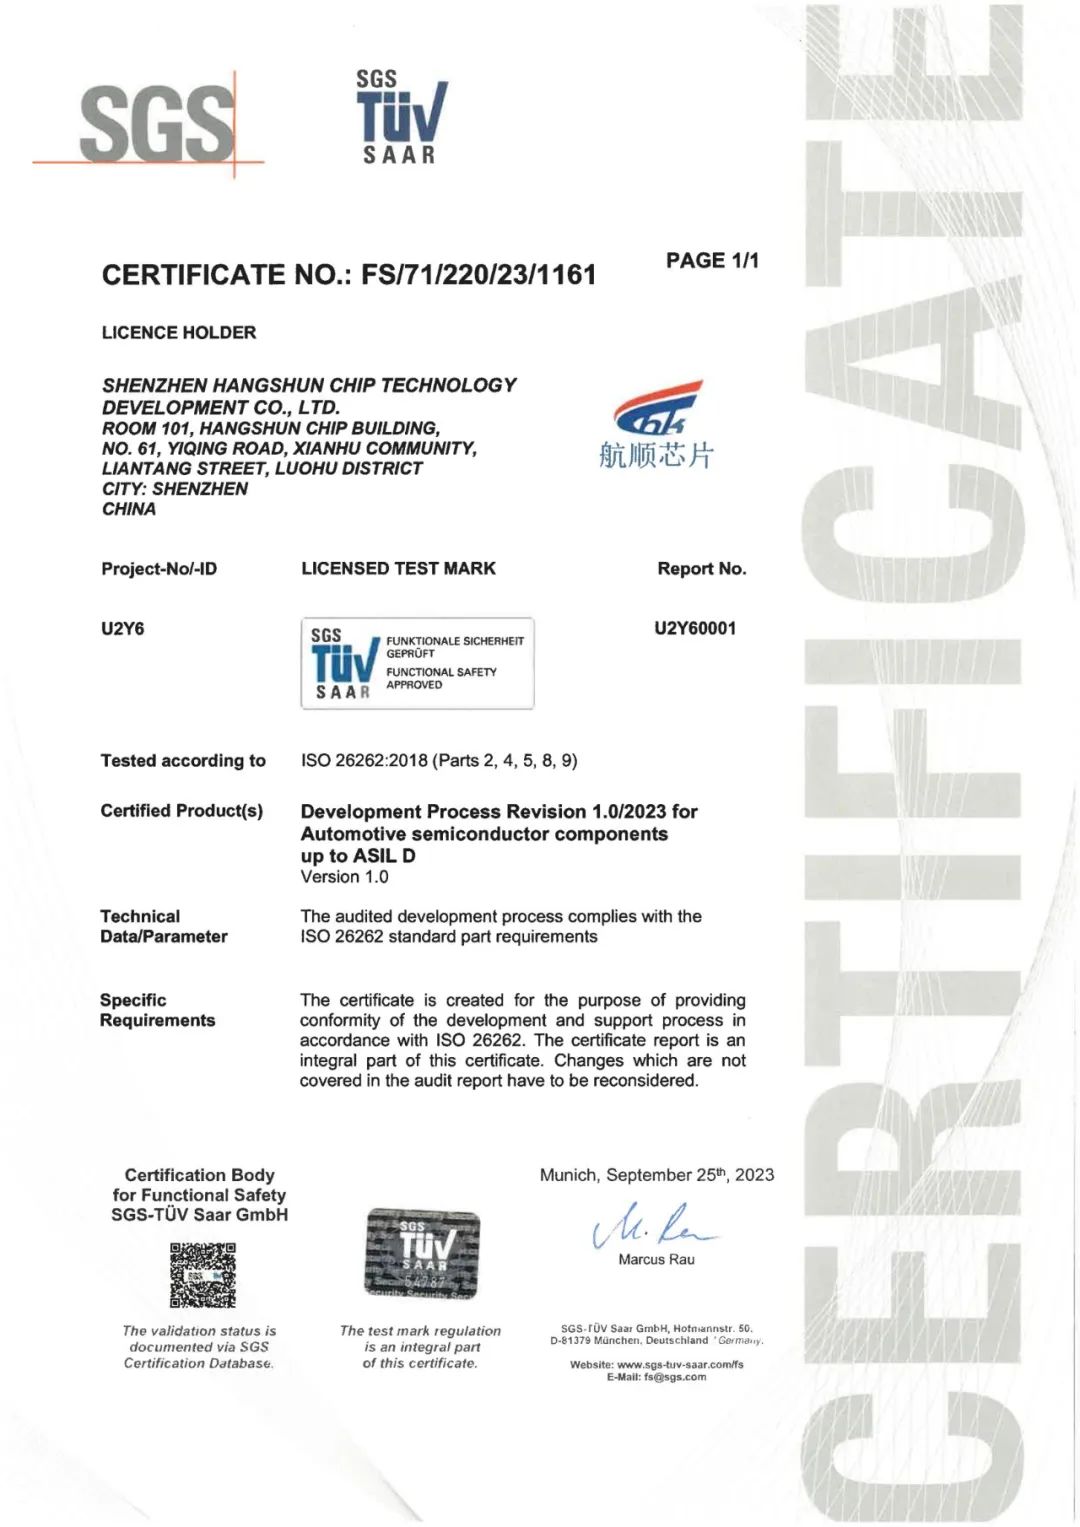 尊龙凯时芯片获得ISO 26262最高等级ASIL D认证，汽车功能安全管理体系再升级